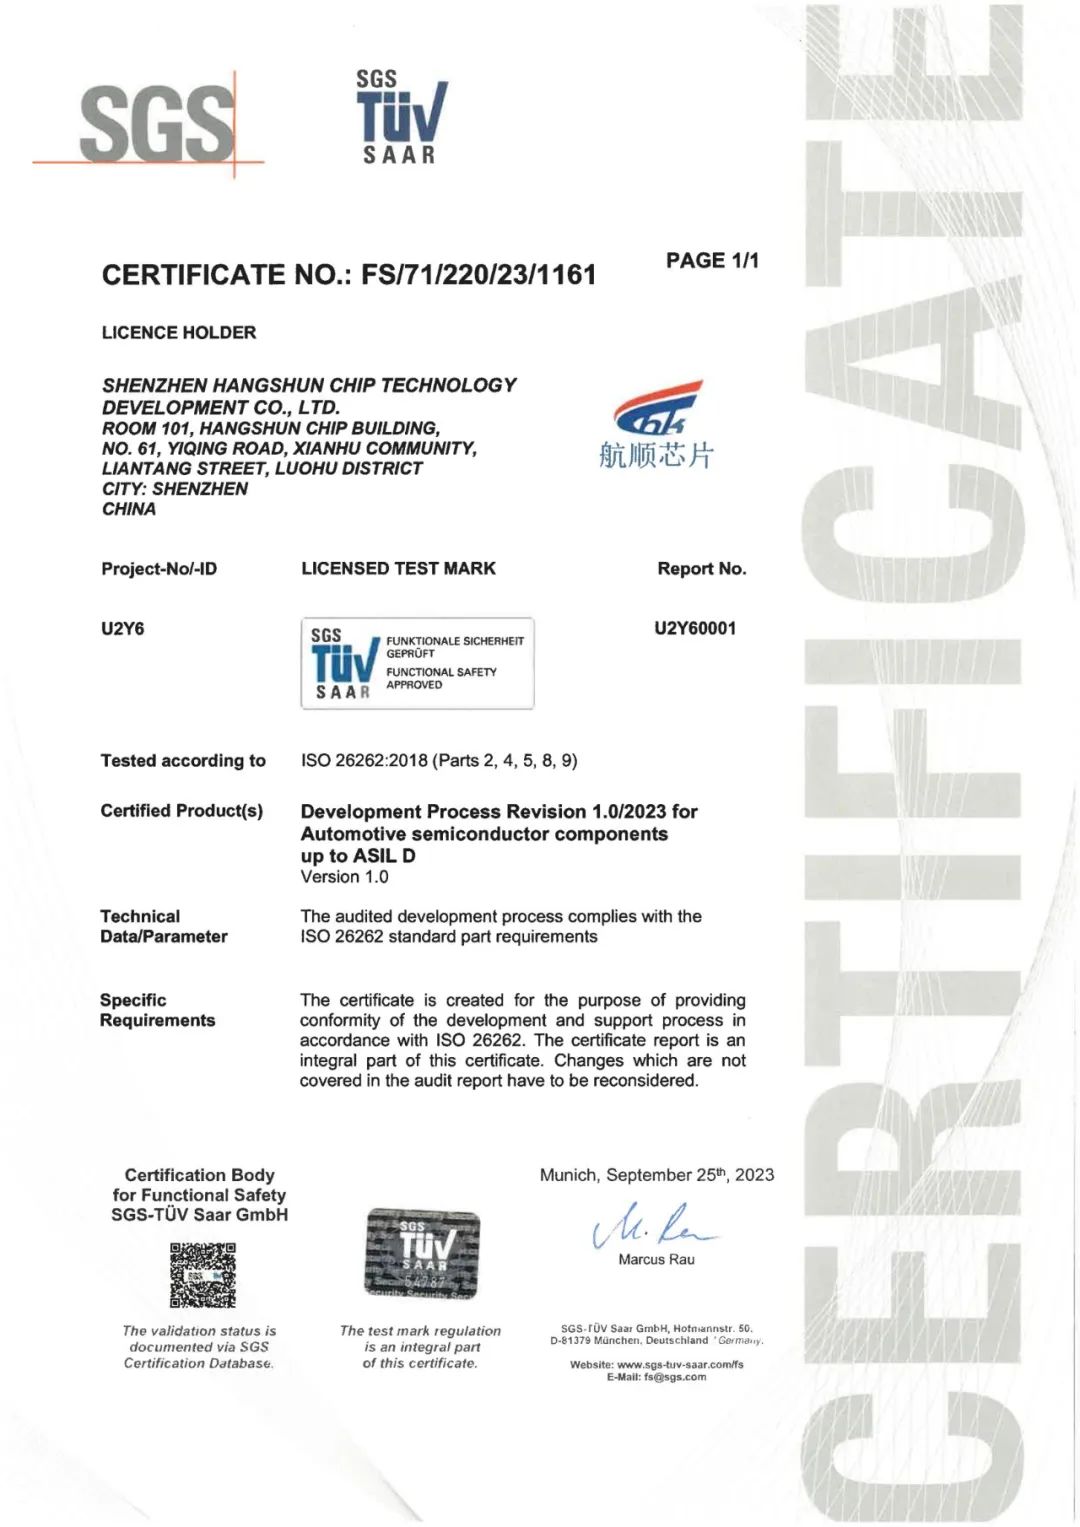 尊龙凯时芯片获得ISO 26262最高等级ASIL D认证，汽车功能安全管理体系再升级